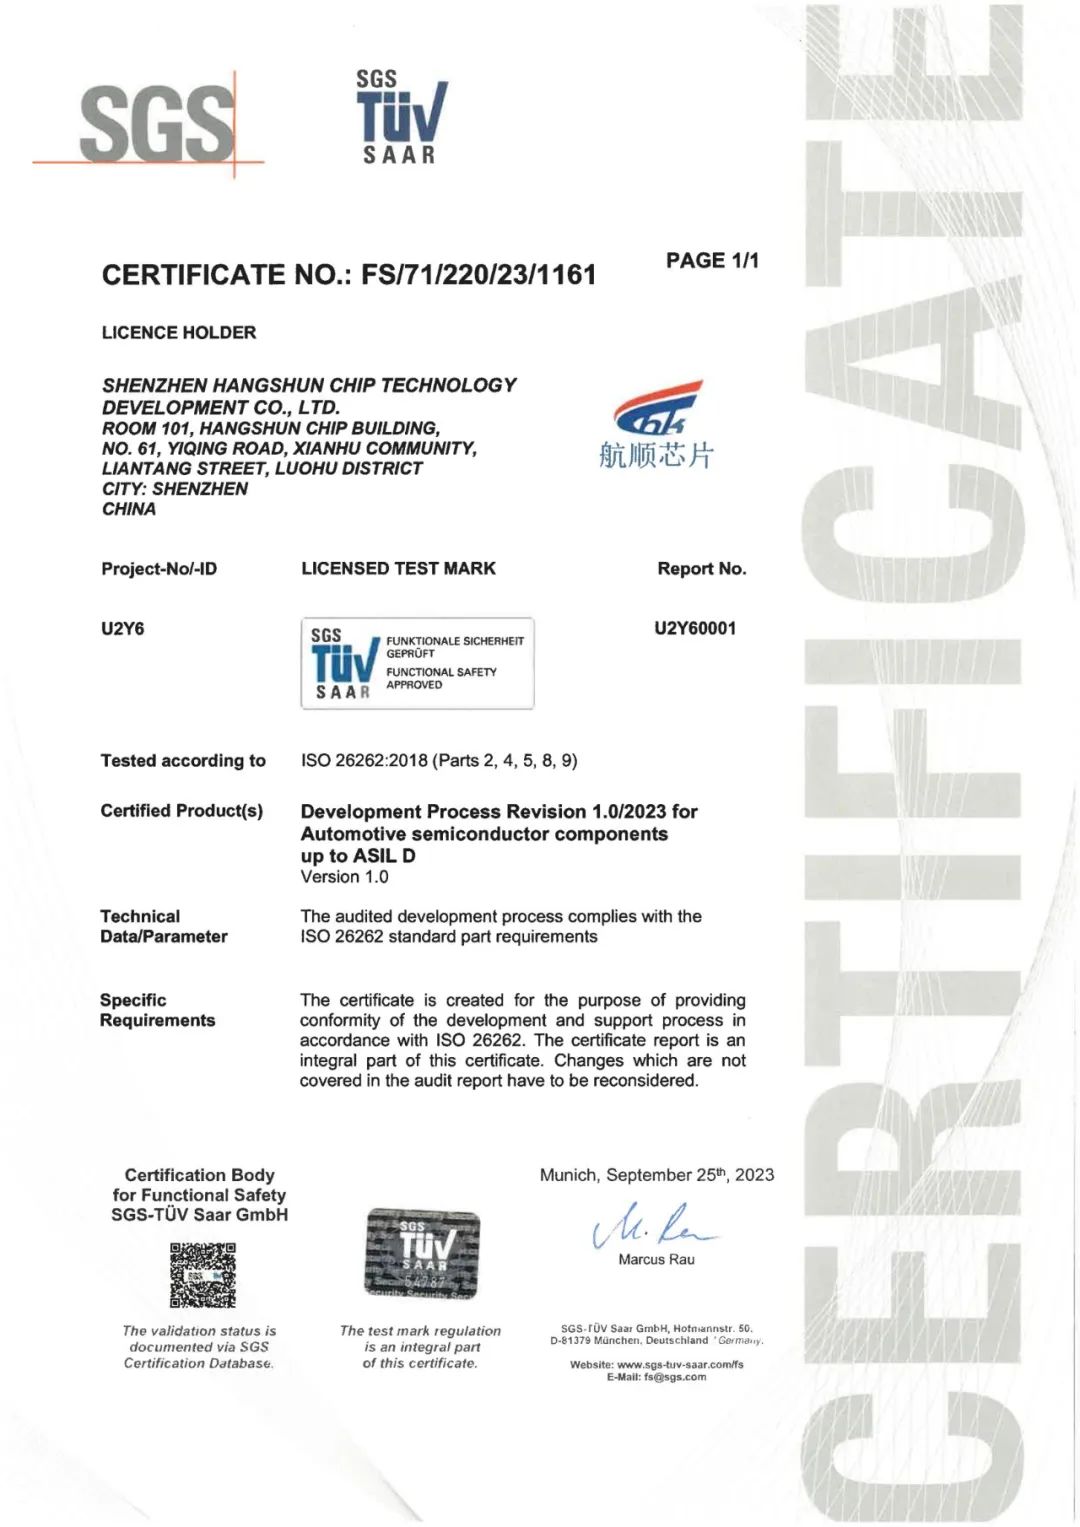 尊龙凯时芯片获得ISO 26262最高等级ASIL D认证，汽车功能安全管理体系再升级